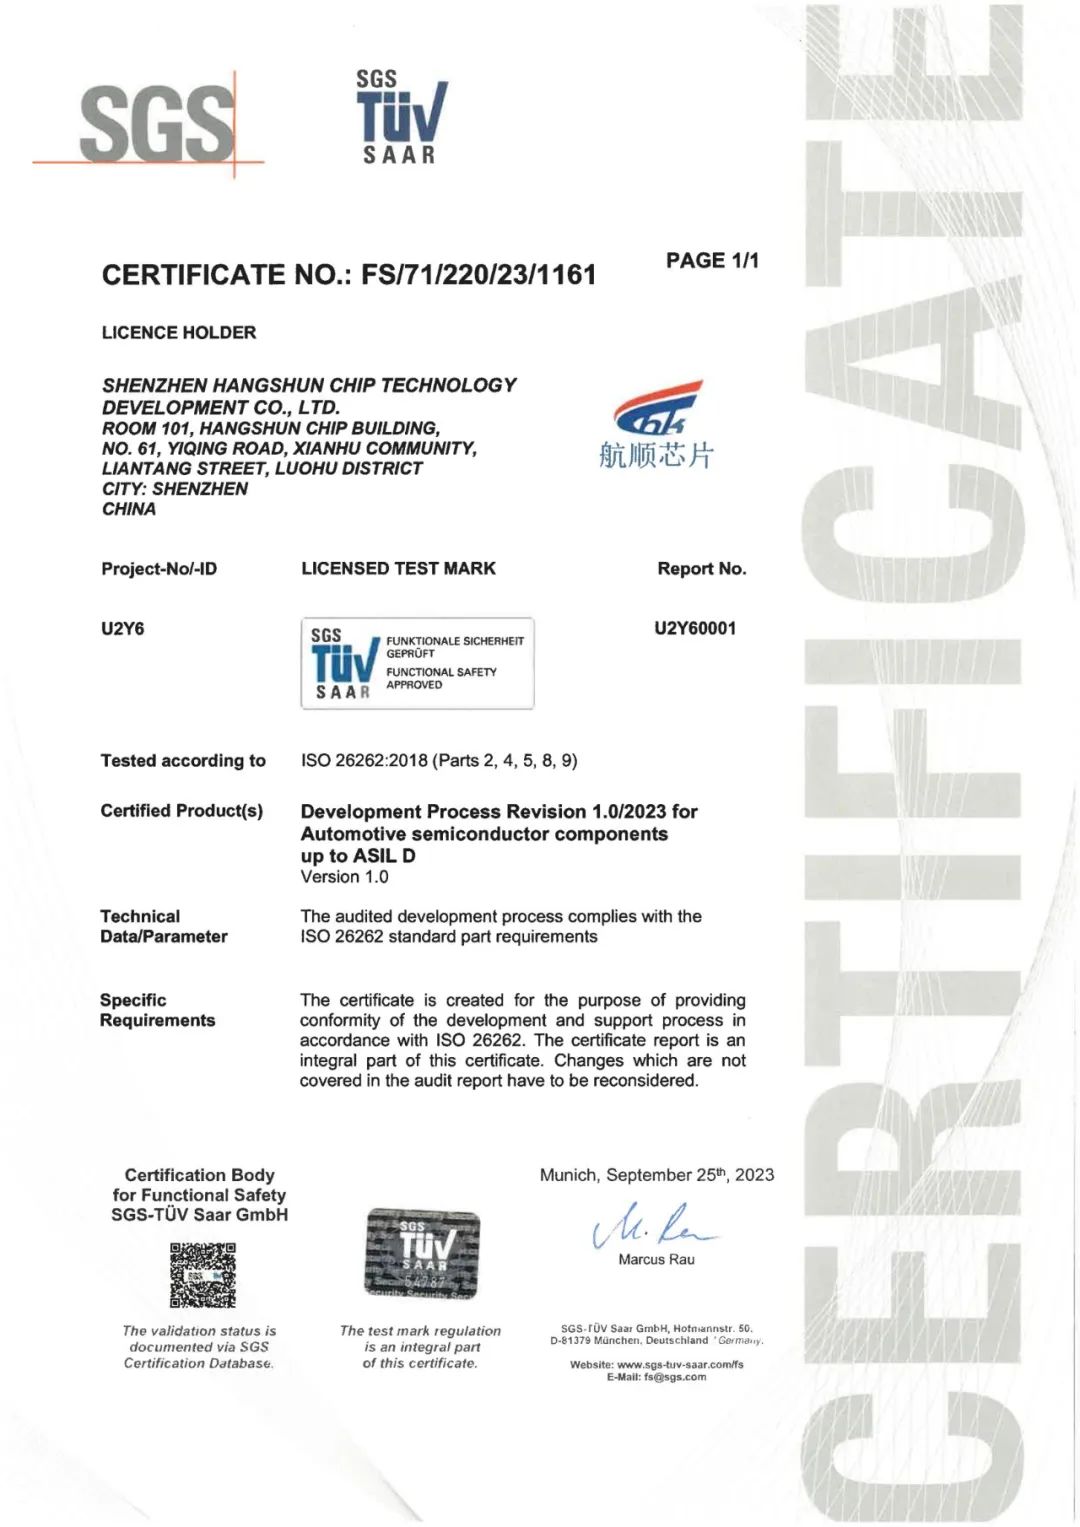 尊龙凯时芯片获得ISO 26262最高等级ASIL D认证，汽车功能安全管理体系再升级